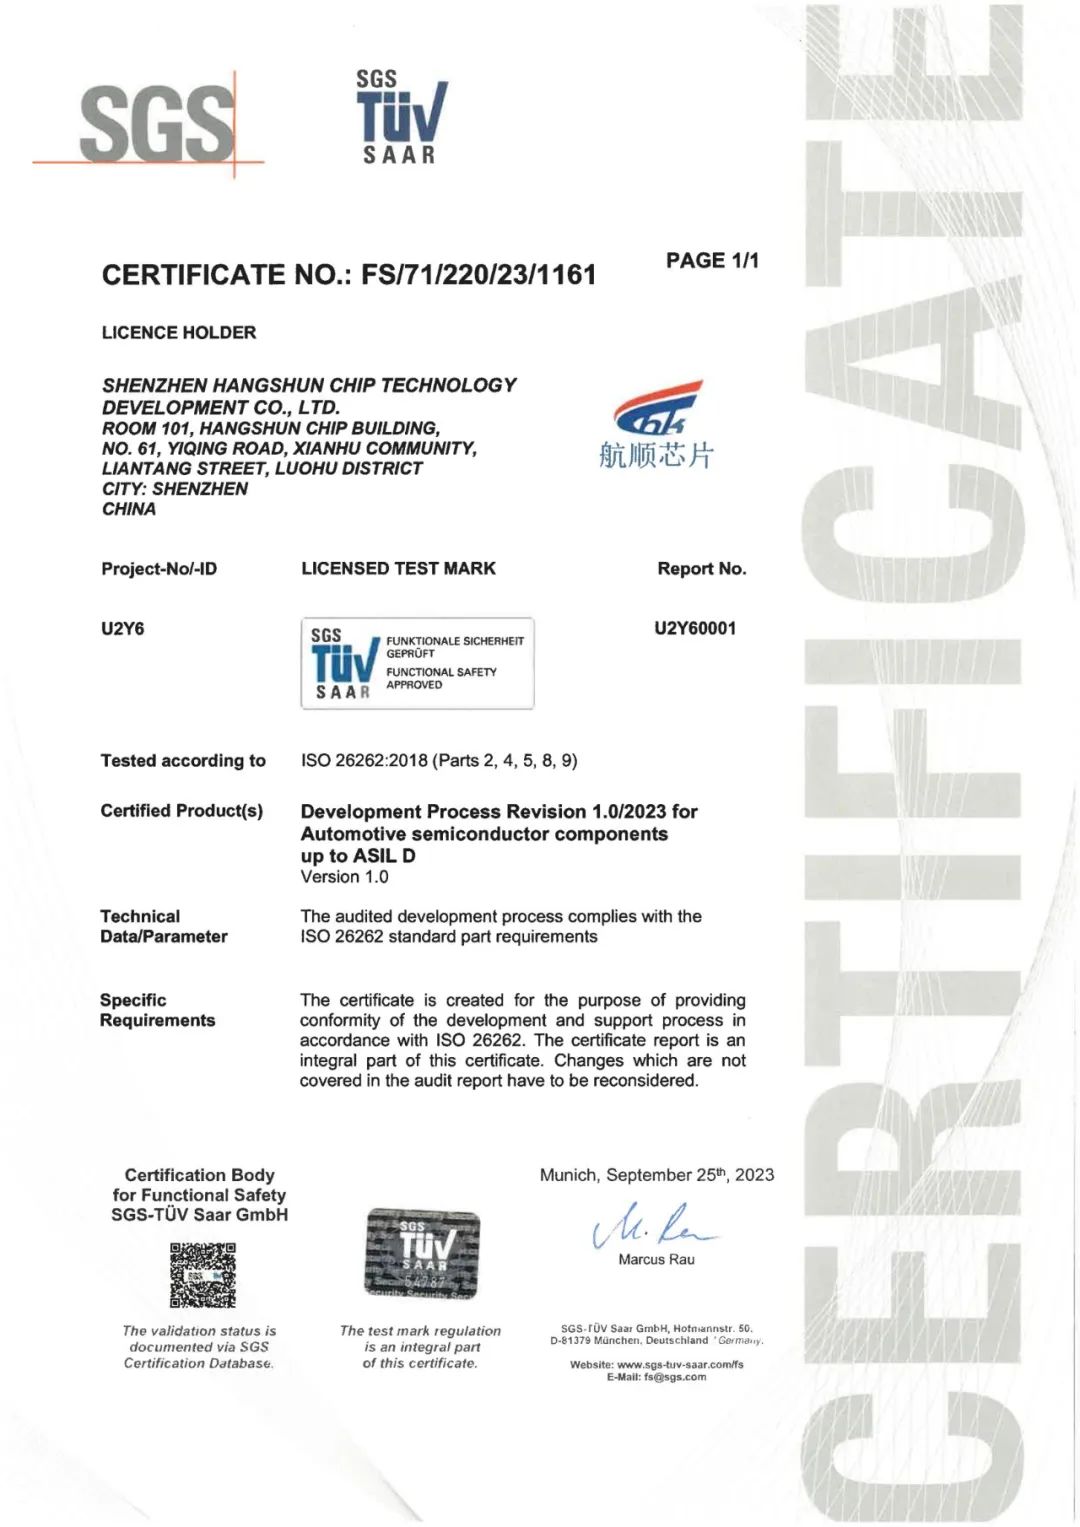 尊龙凯时芯片获得ISO 26262最高等级ASIL D认证，汽车功能安全管理体系再升级